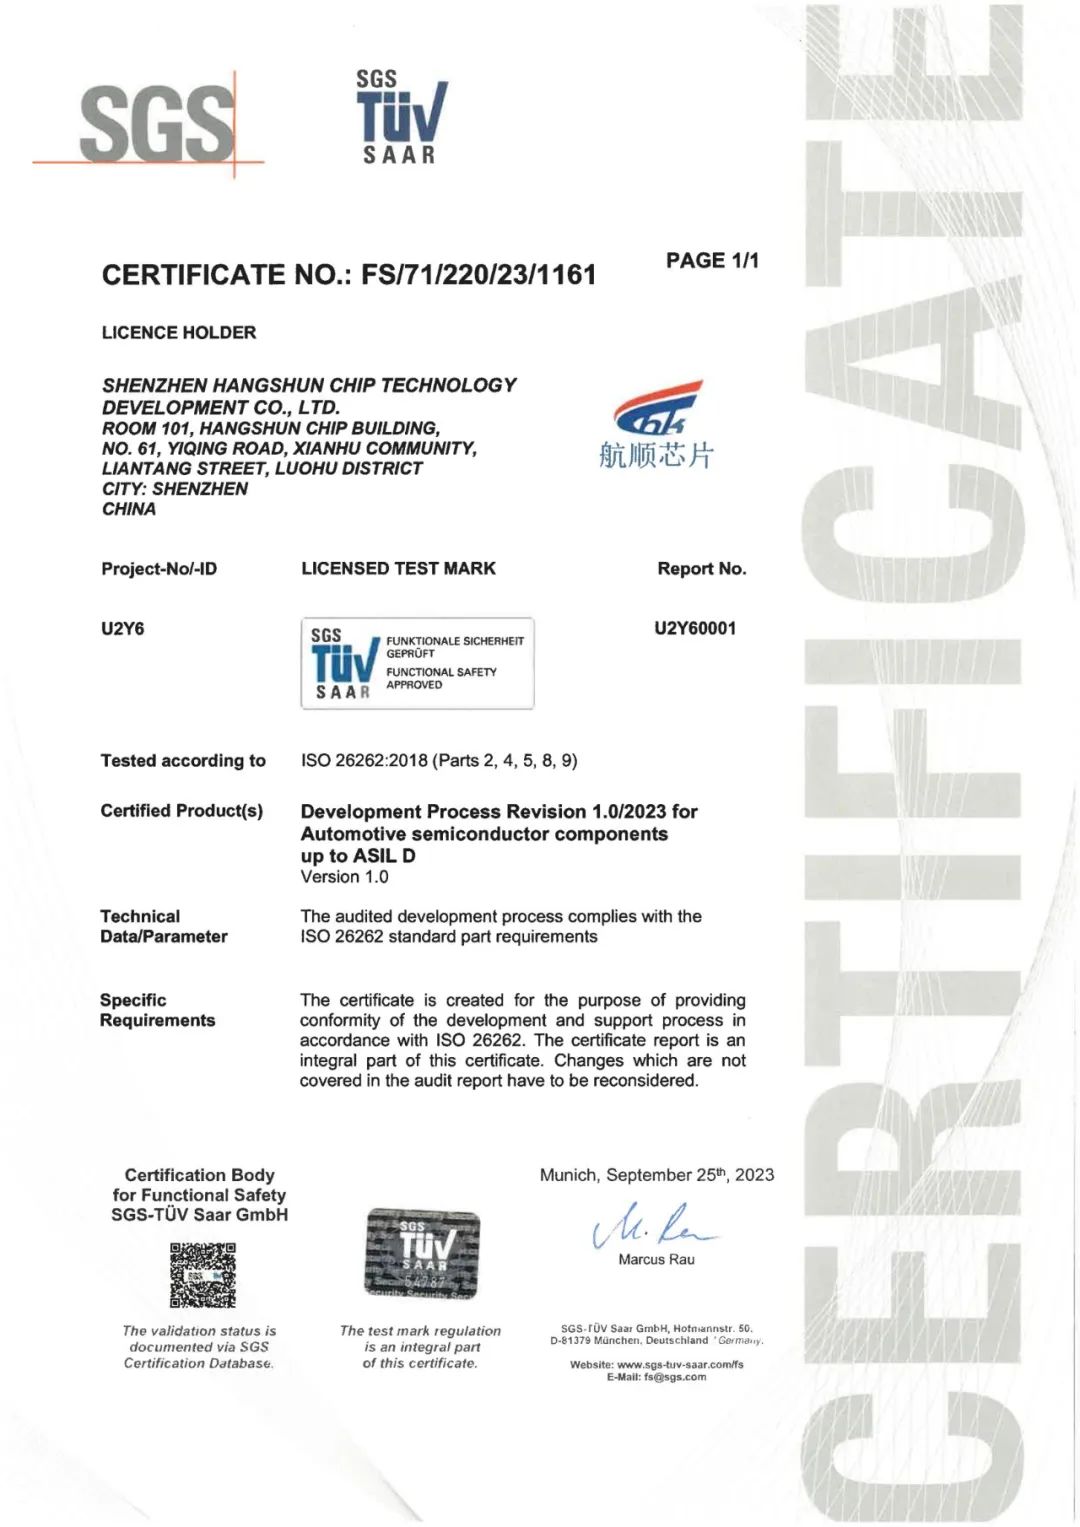 尊龙凯时芯片获得ISO 26262最高等级ASIL D认证，汽车功能安全管理体系再升级